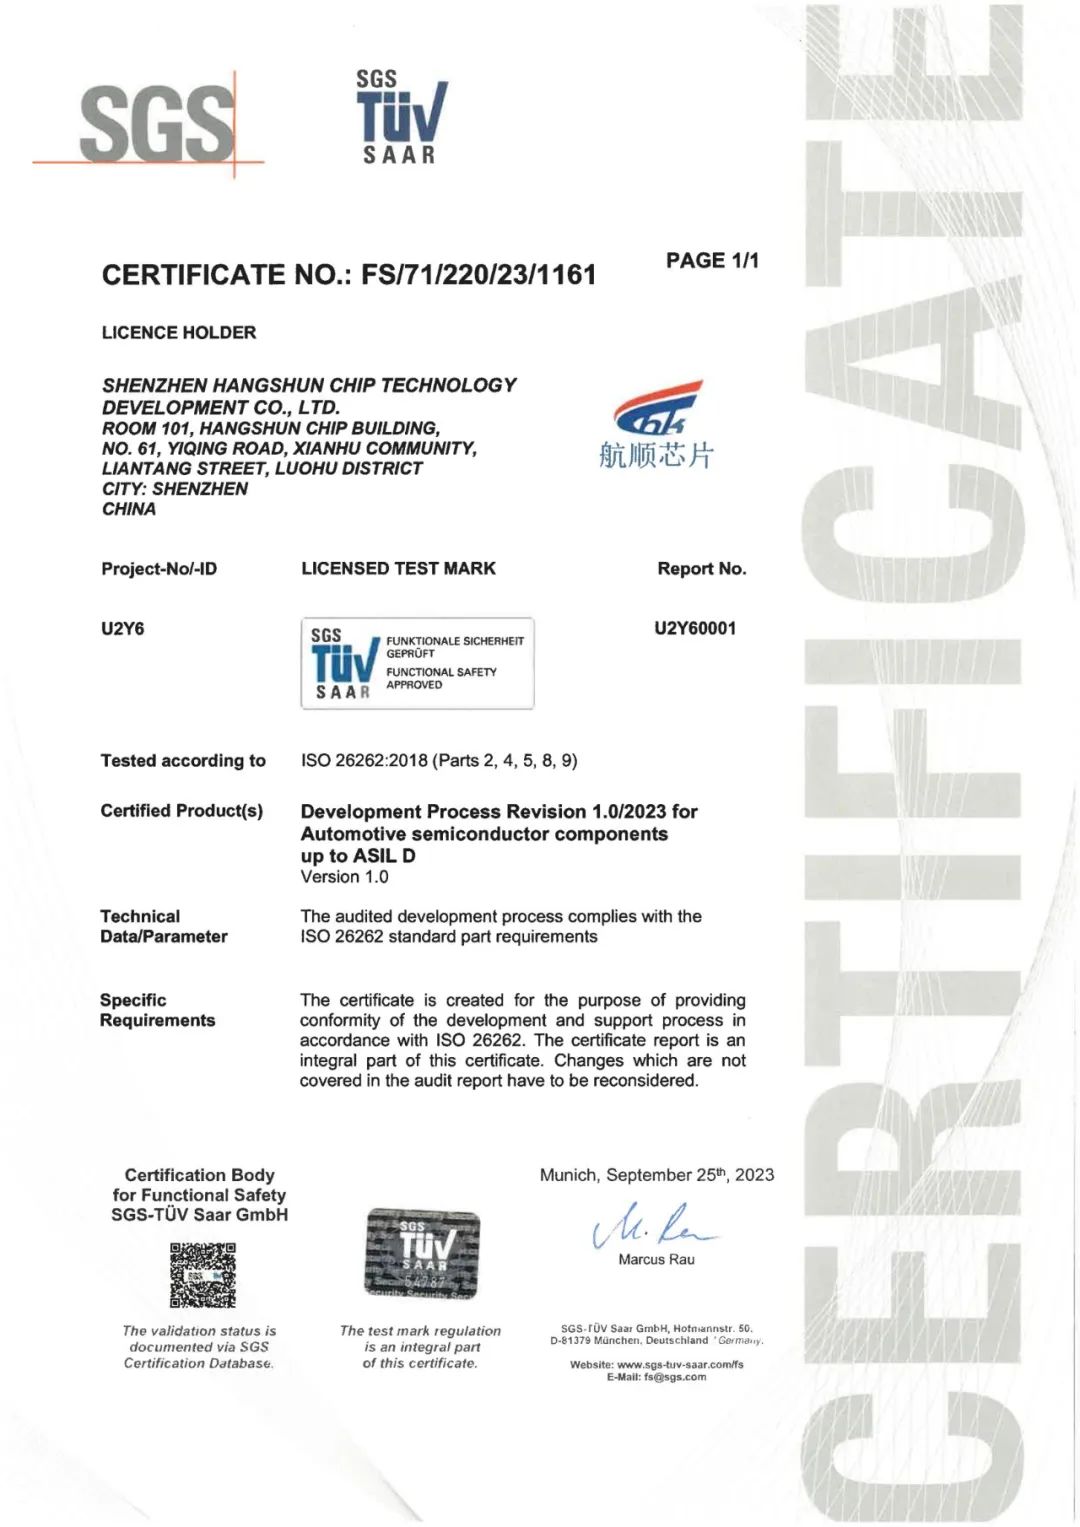 尊龙凯时芯片获得ISO 26262最高等级ASIL D认证，汽车功能安全管理体系再升级